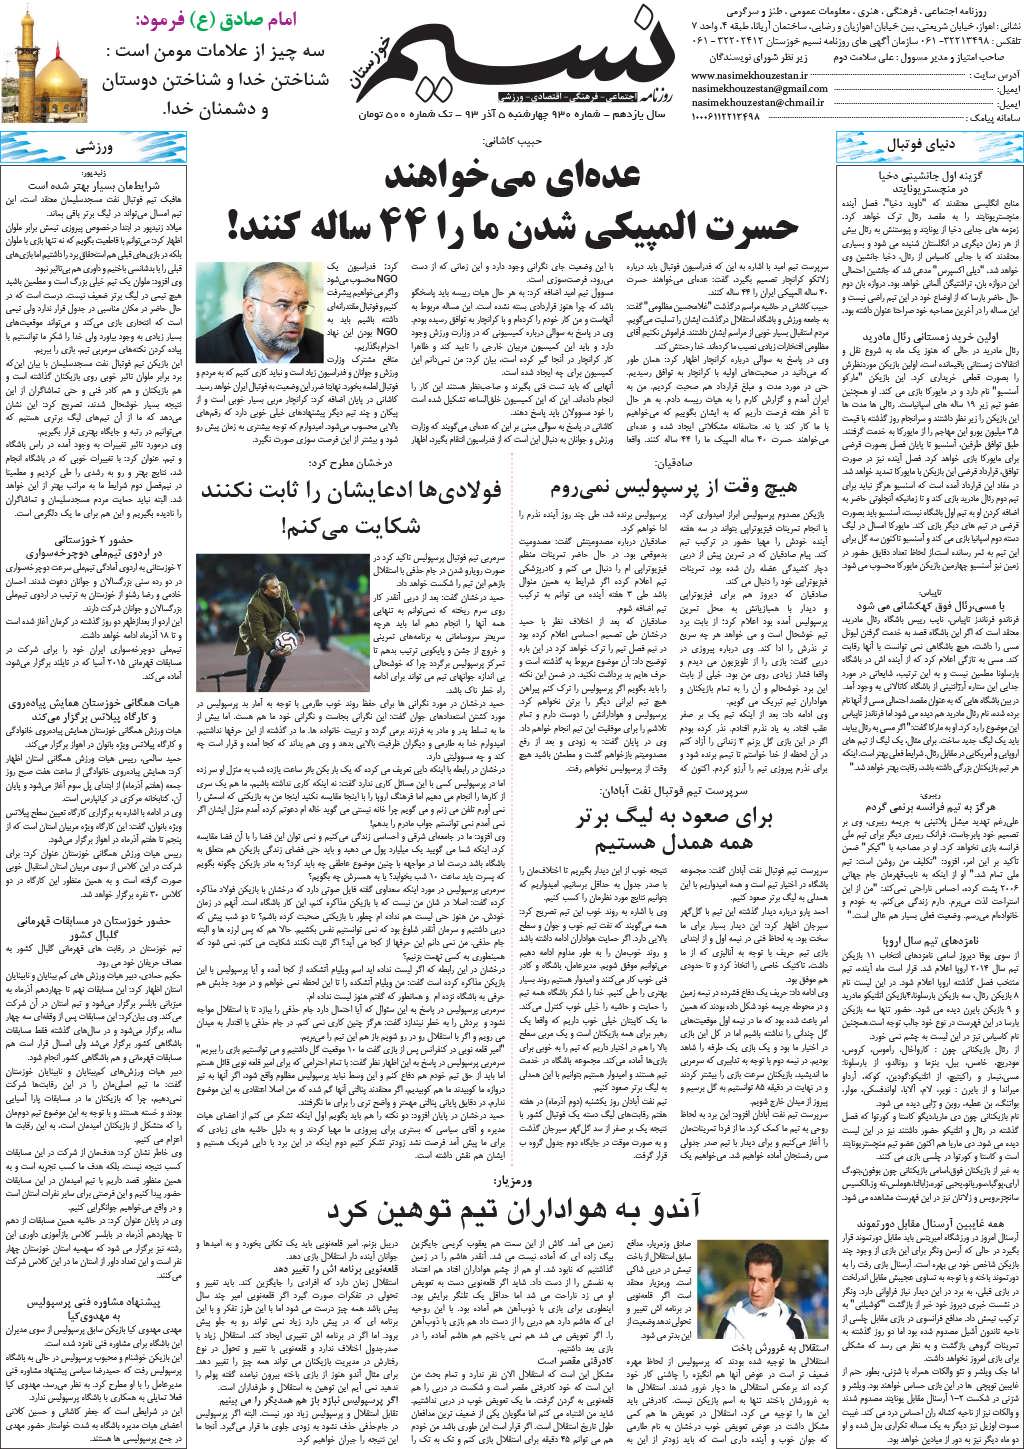 صفحه آخر روزنامه نسیم شماره 930